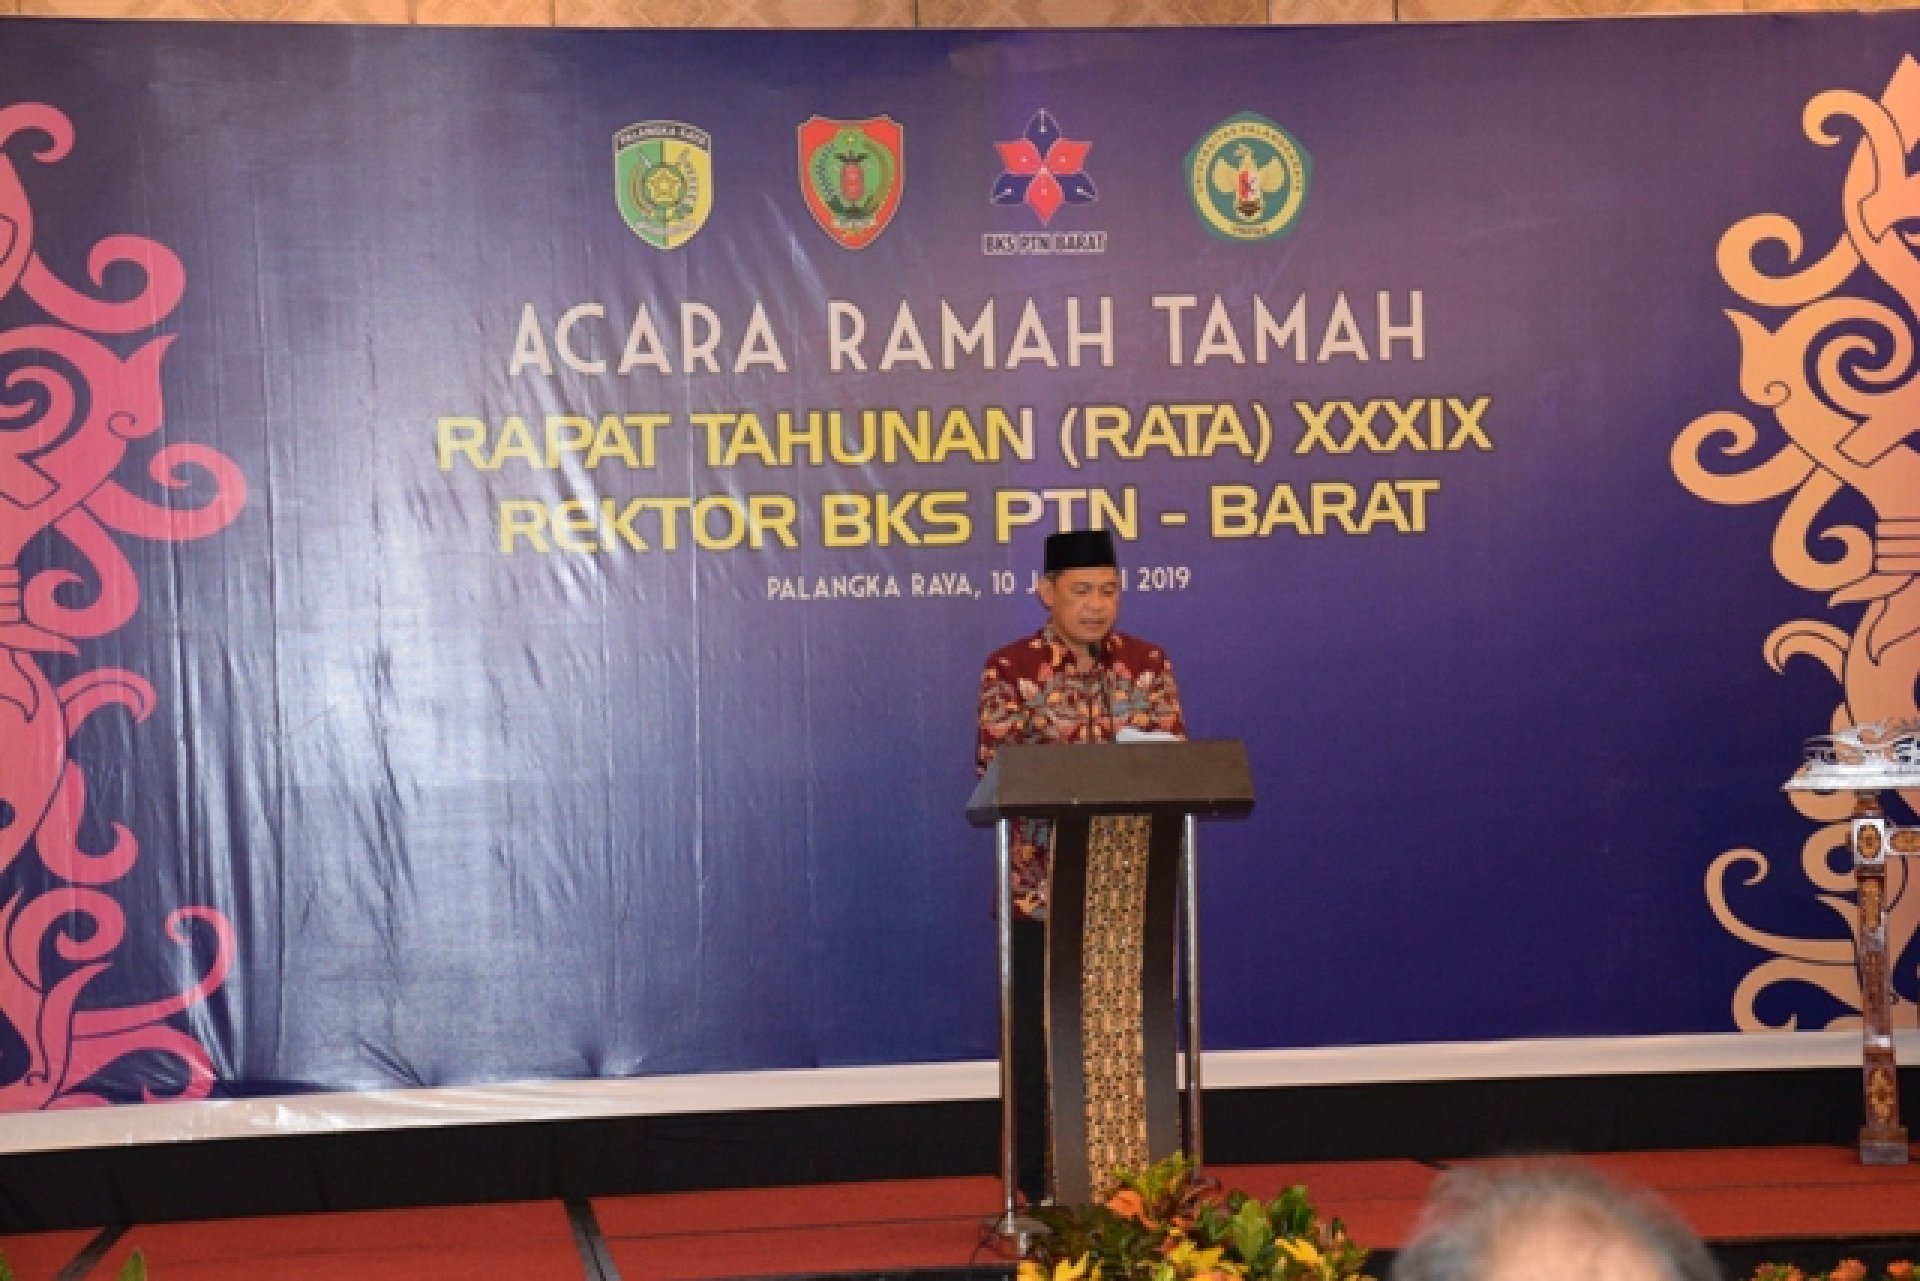 UPR Tuan Rumah Pertemuan BKS PTN Wilayah Barat Indonesia, Ini Harapan Gubernur Kalteng